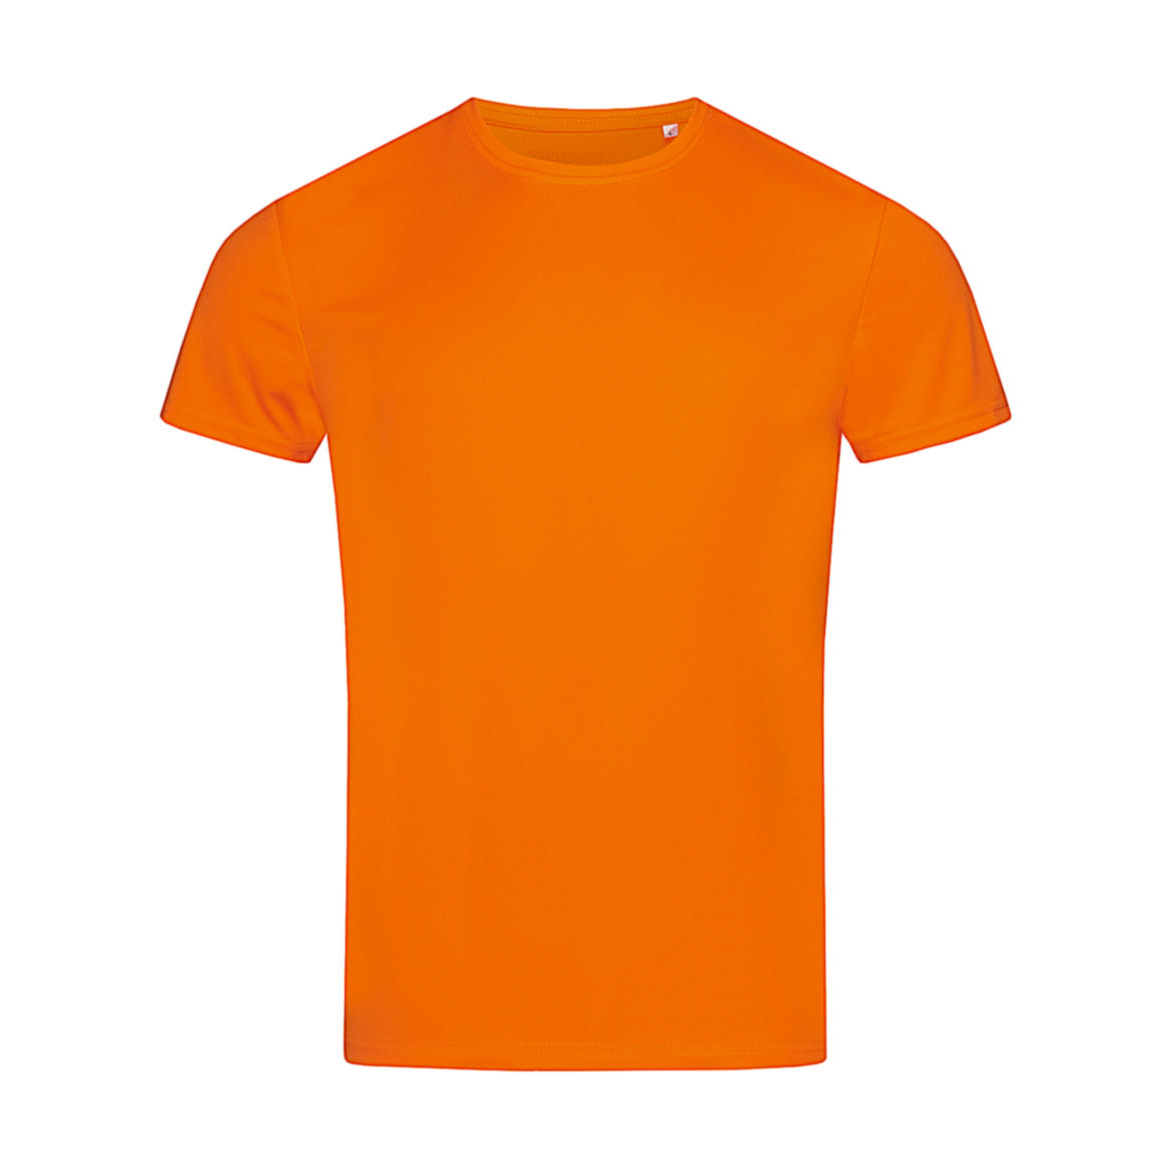 Triko pánské Stedman sportovní tričko - oranžové, S